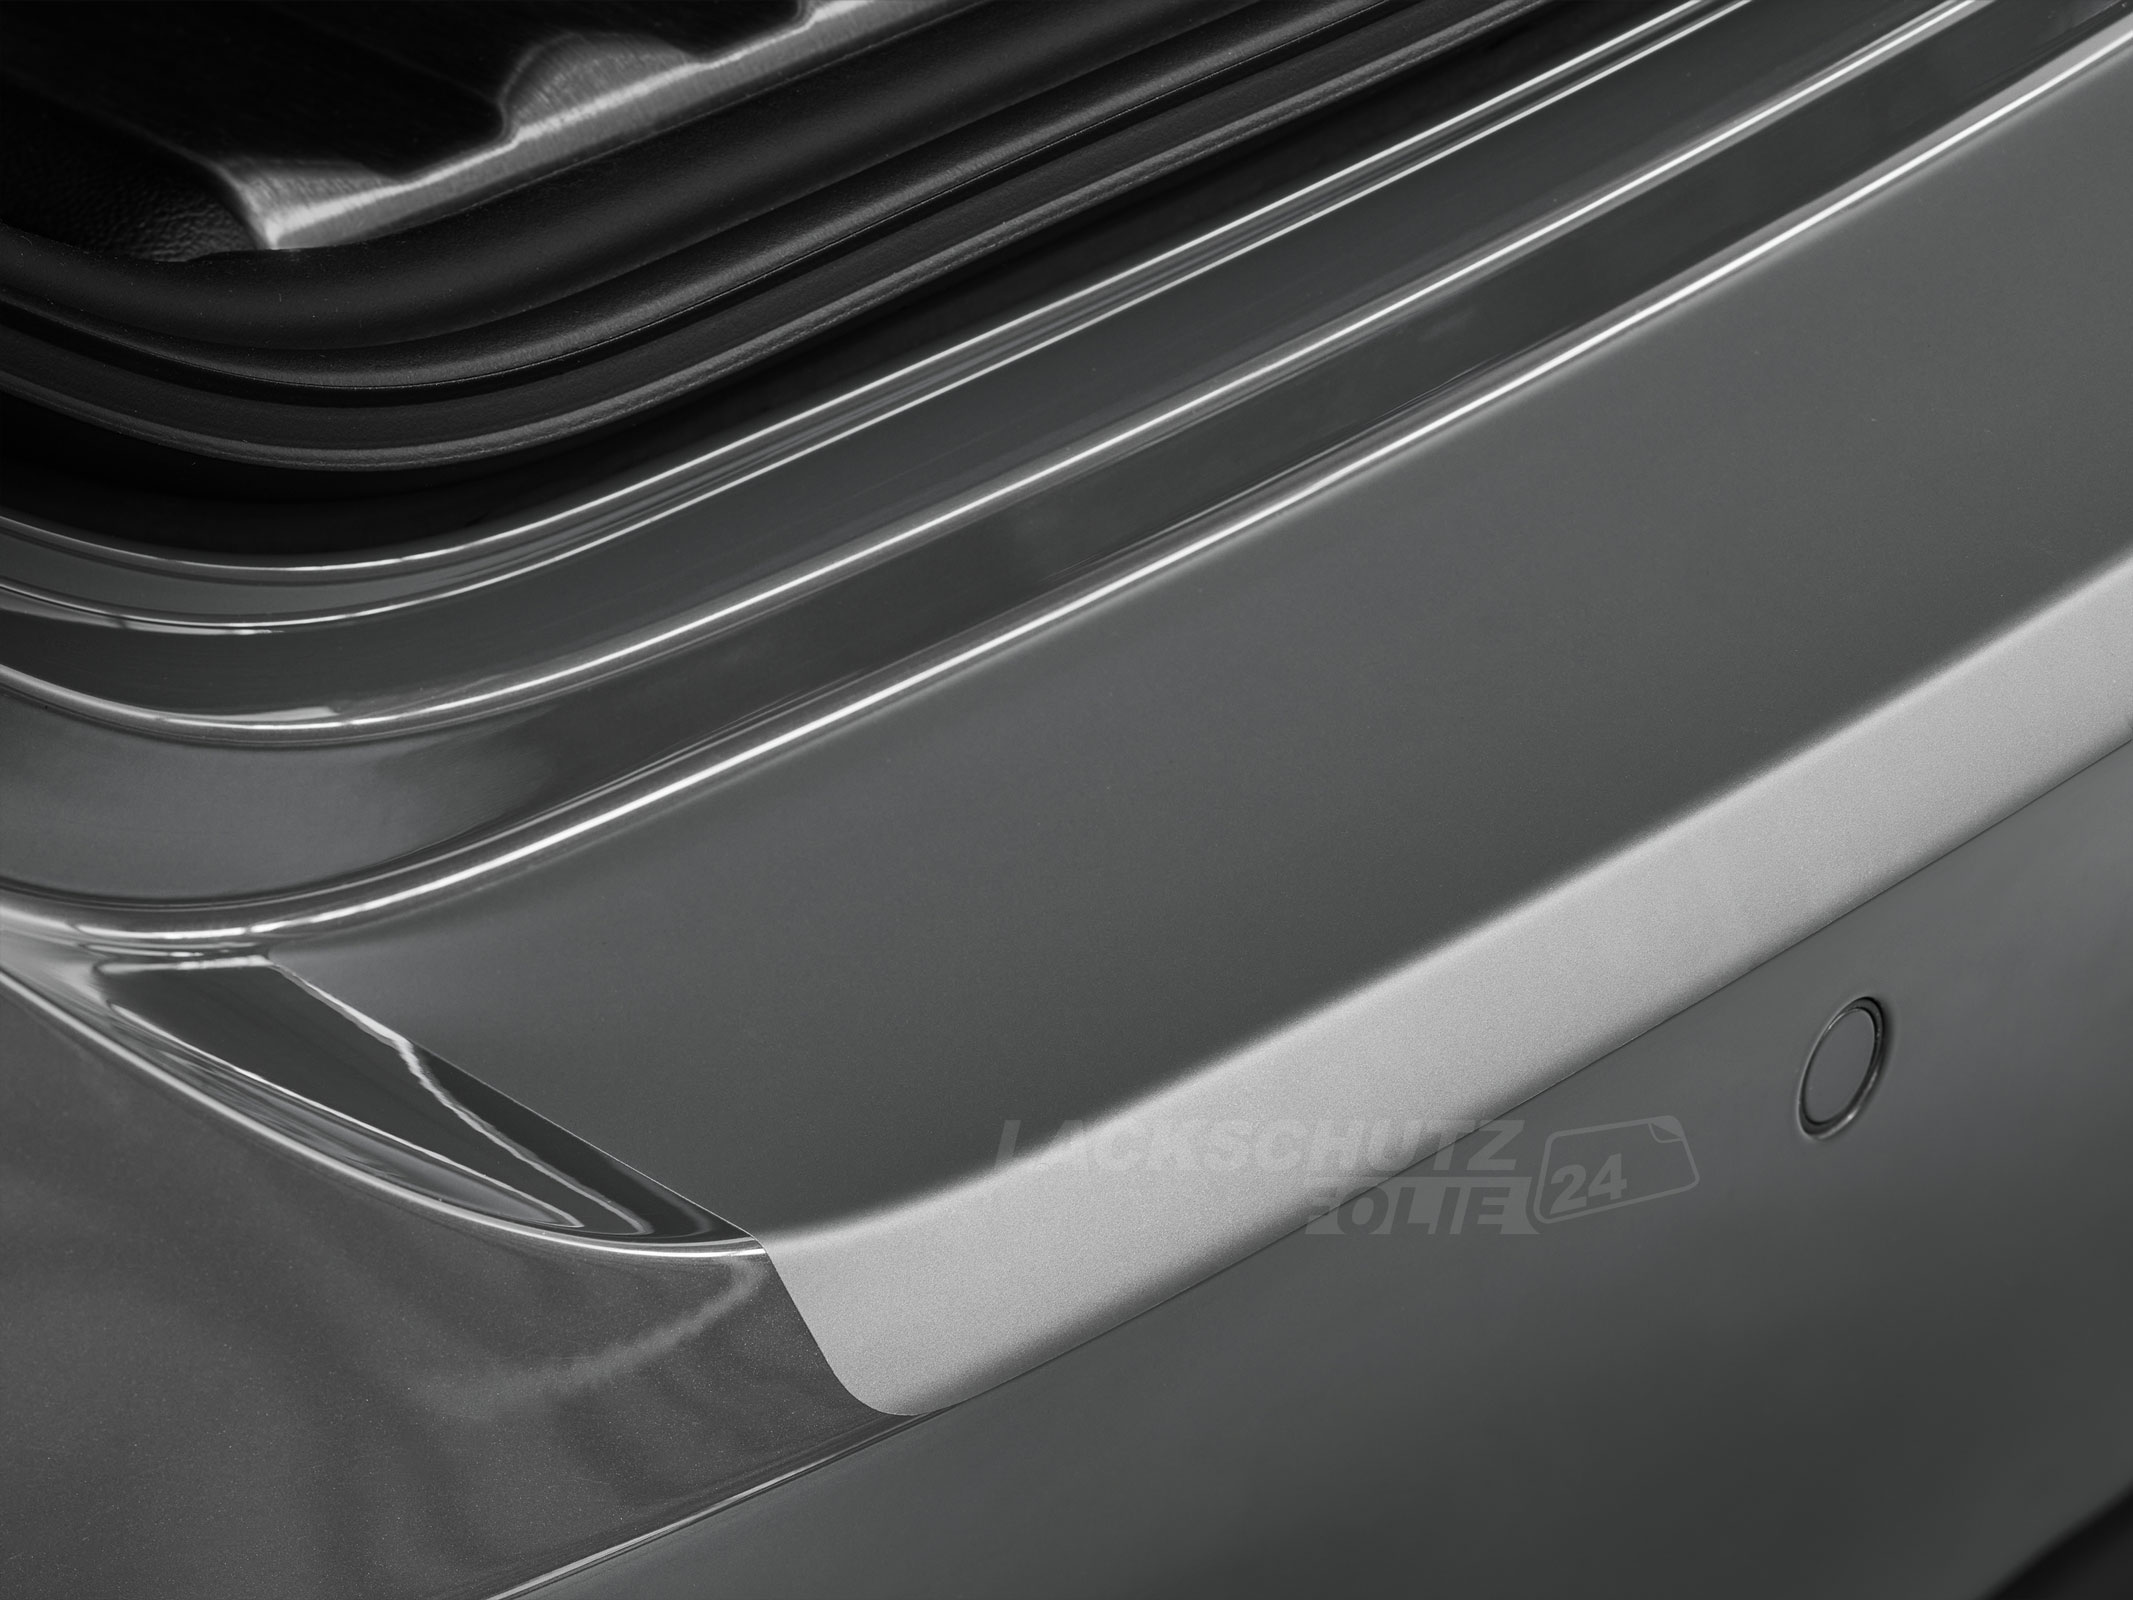 Ladekantenschutzfolie - Transparent Glatt MATT 110 µm stark  für Audi A4 Avant (Kombi) B8, Typ 8K, Facelift, BJ 11/2011-2015